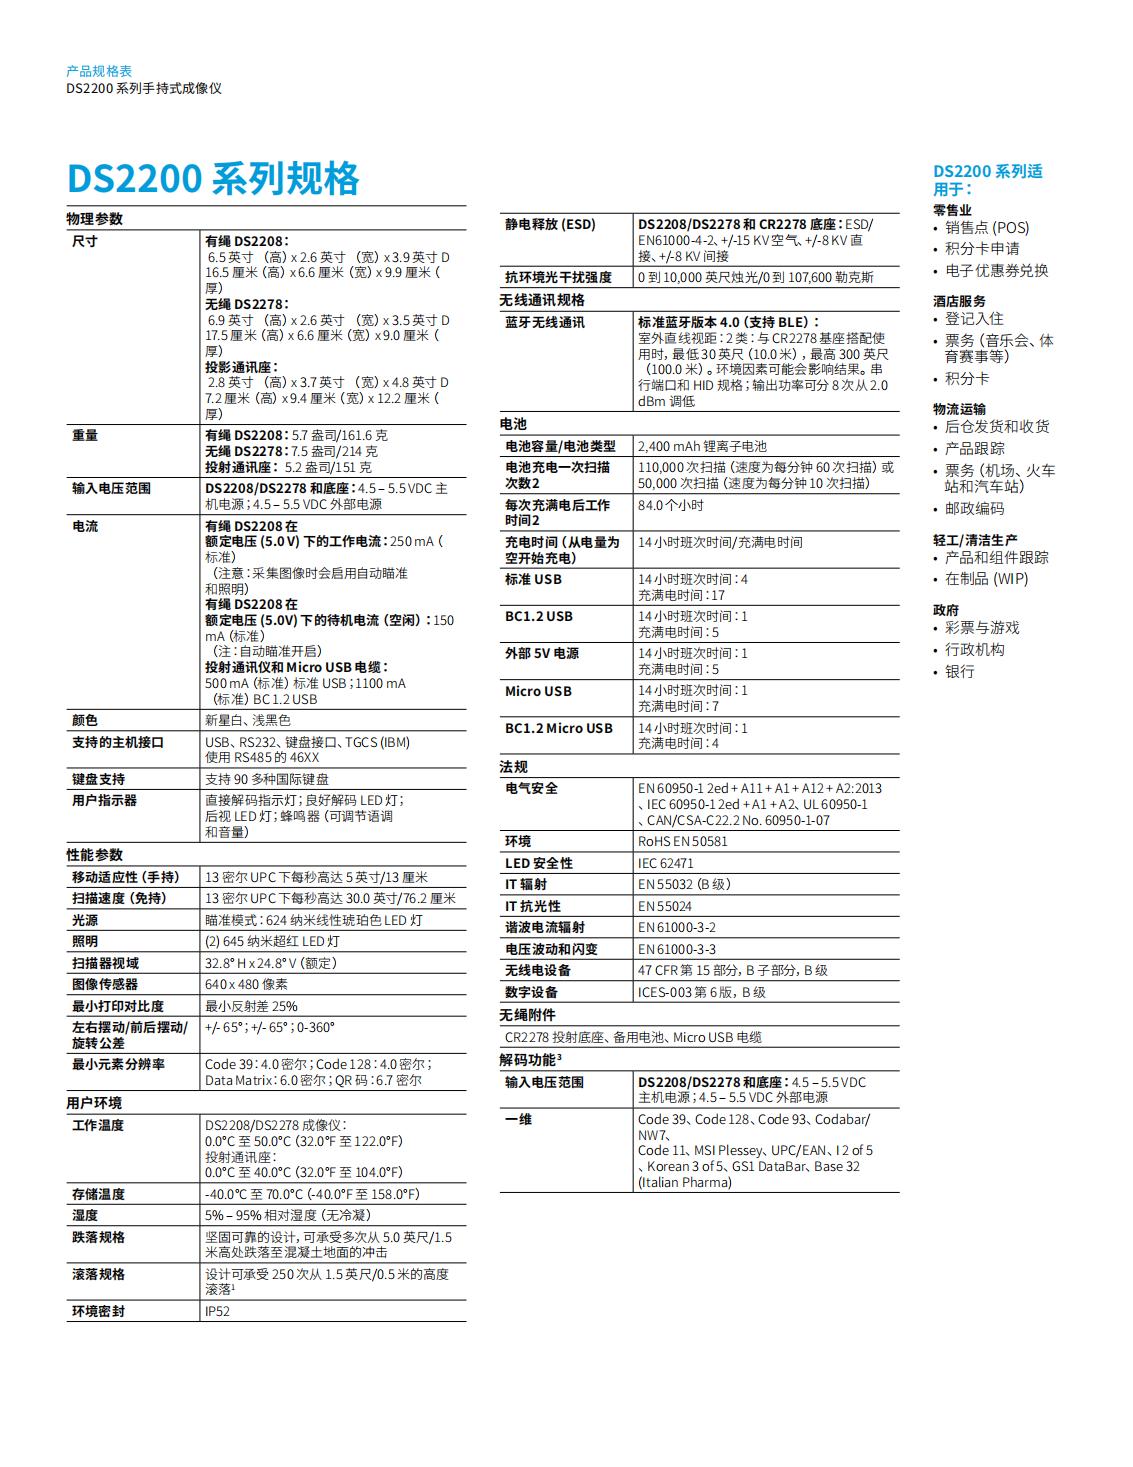 ds2200-series-spec-sheet-zh-cn_02.jpg